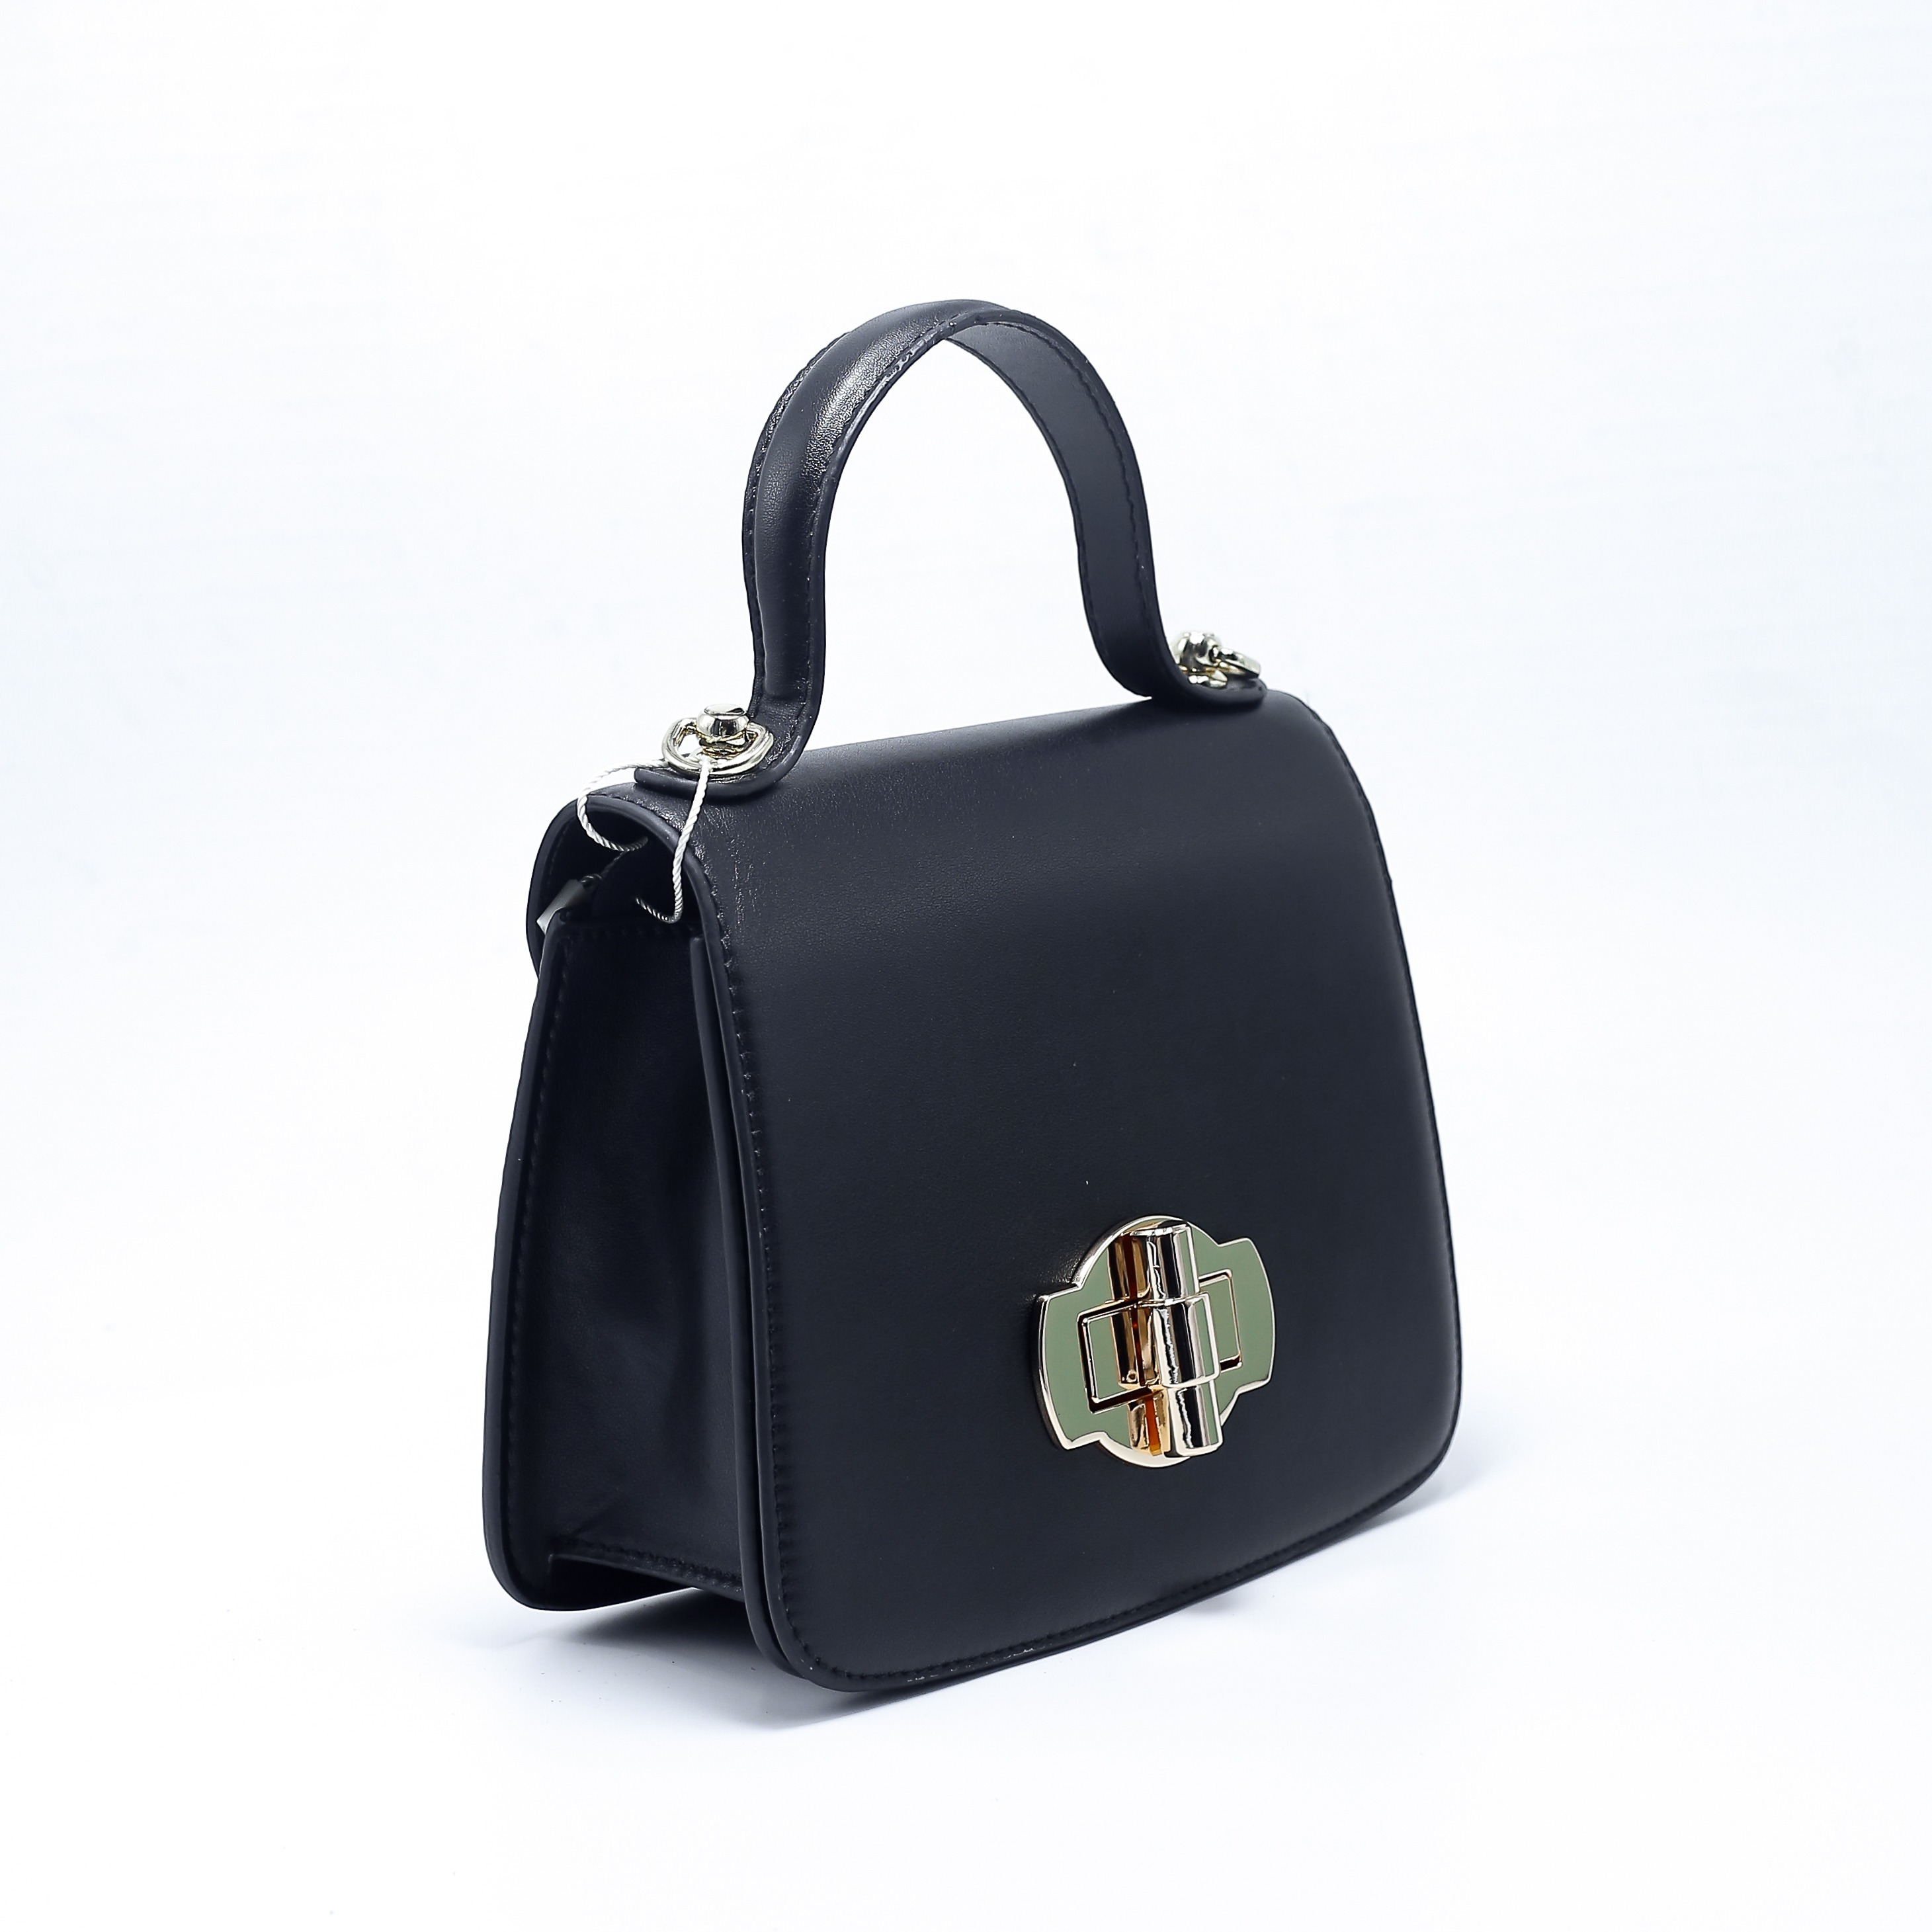 Túi xách thời trang EVA05-2501